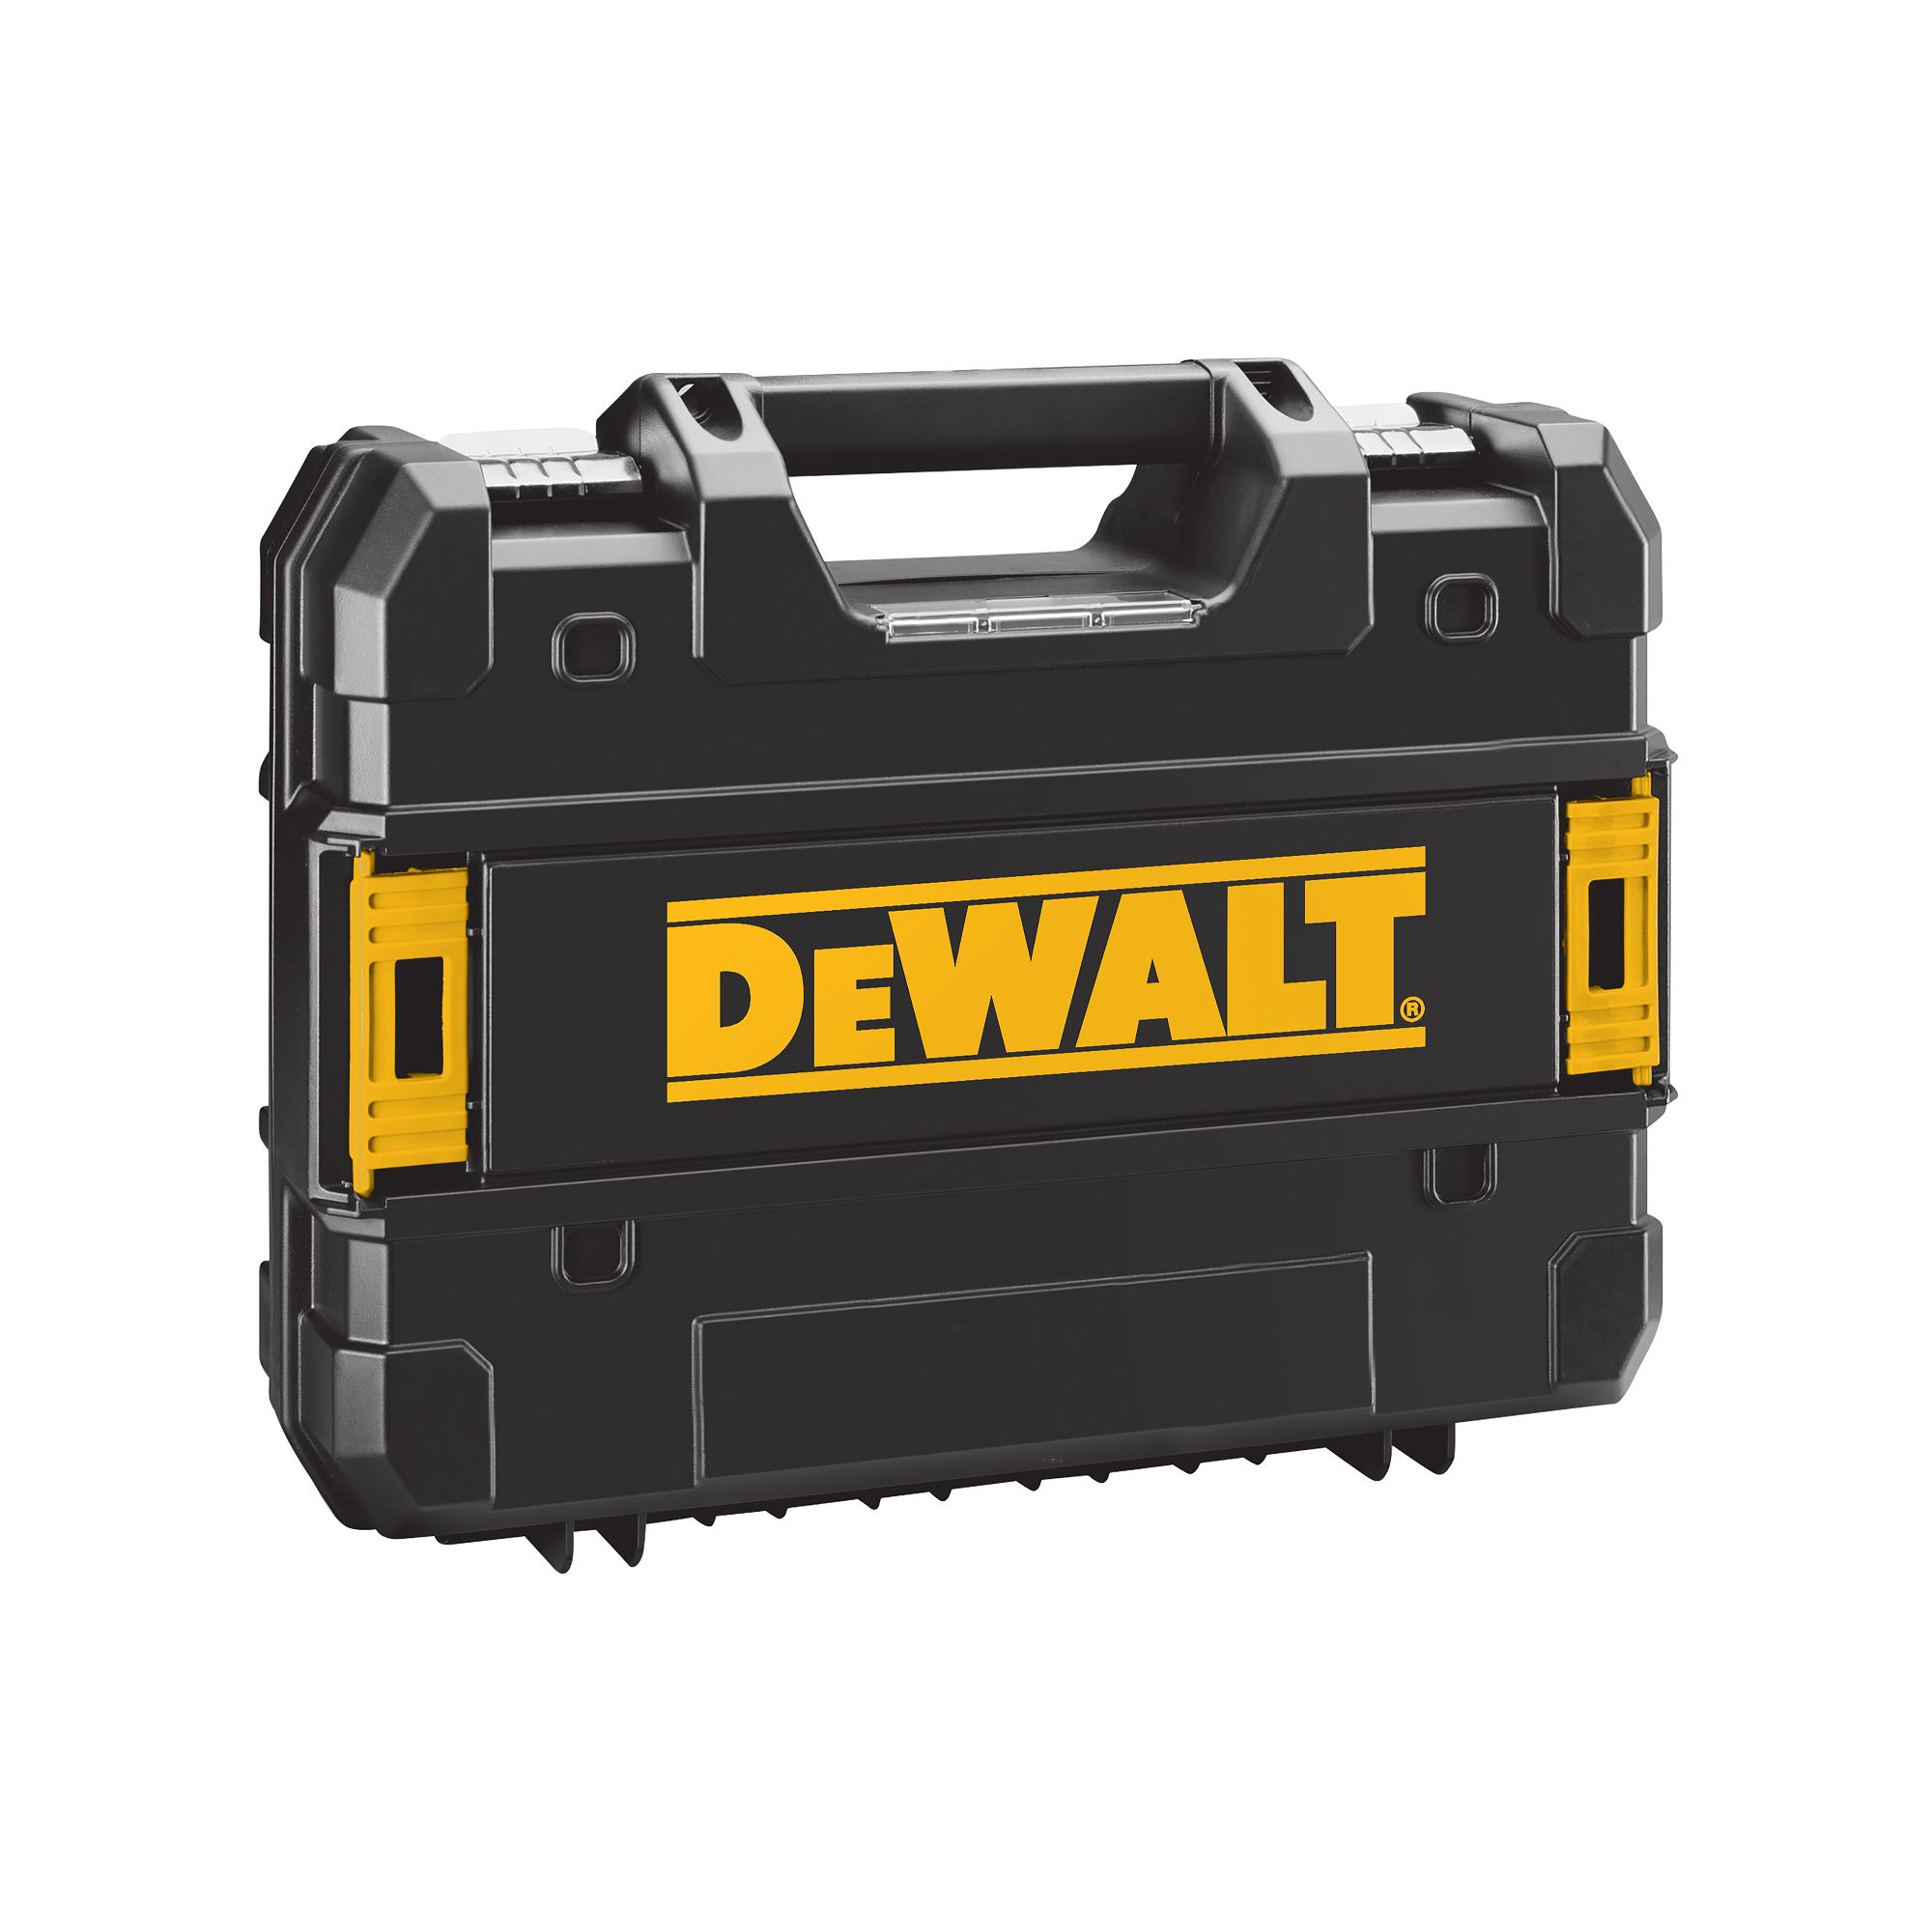 DeWalt 18V Li-ion Brushed Cordless Combi drill (2 x 2Ah) - DCD776D2T- GB